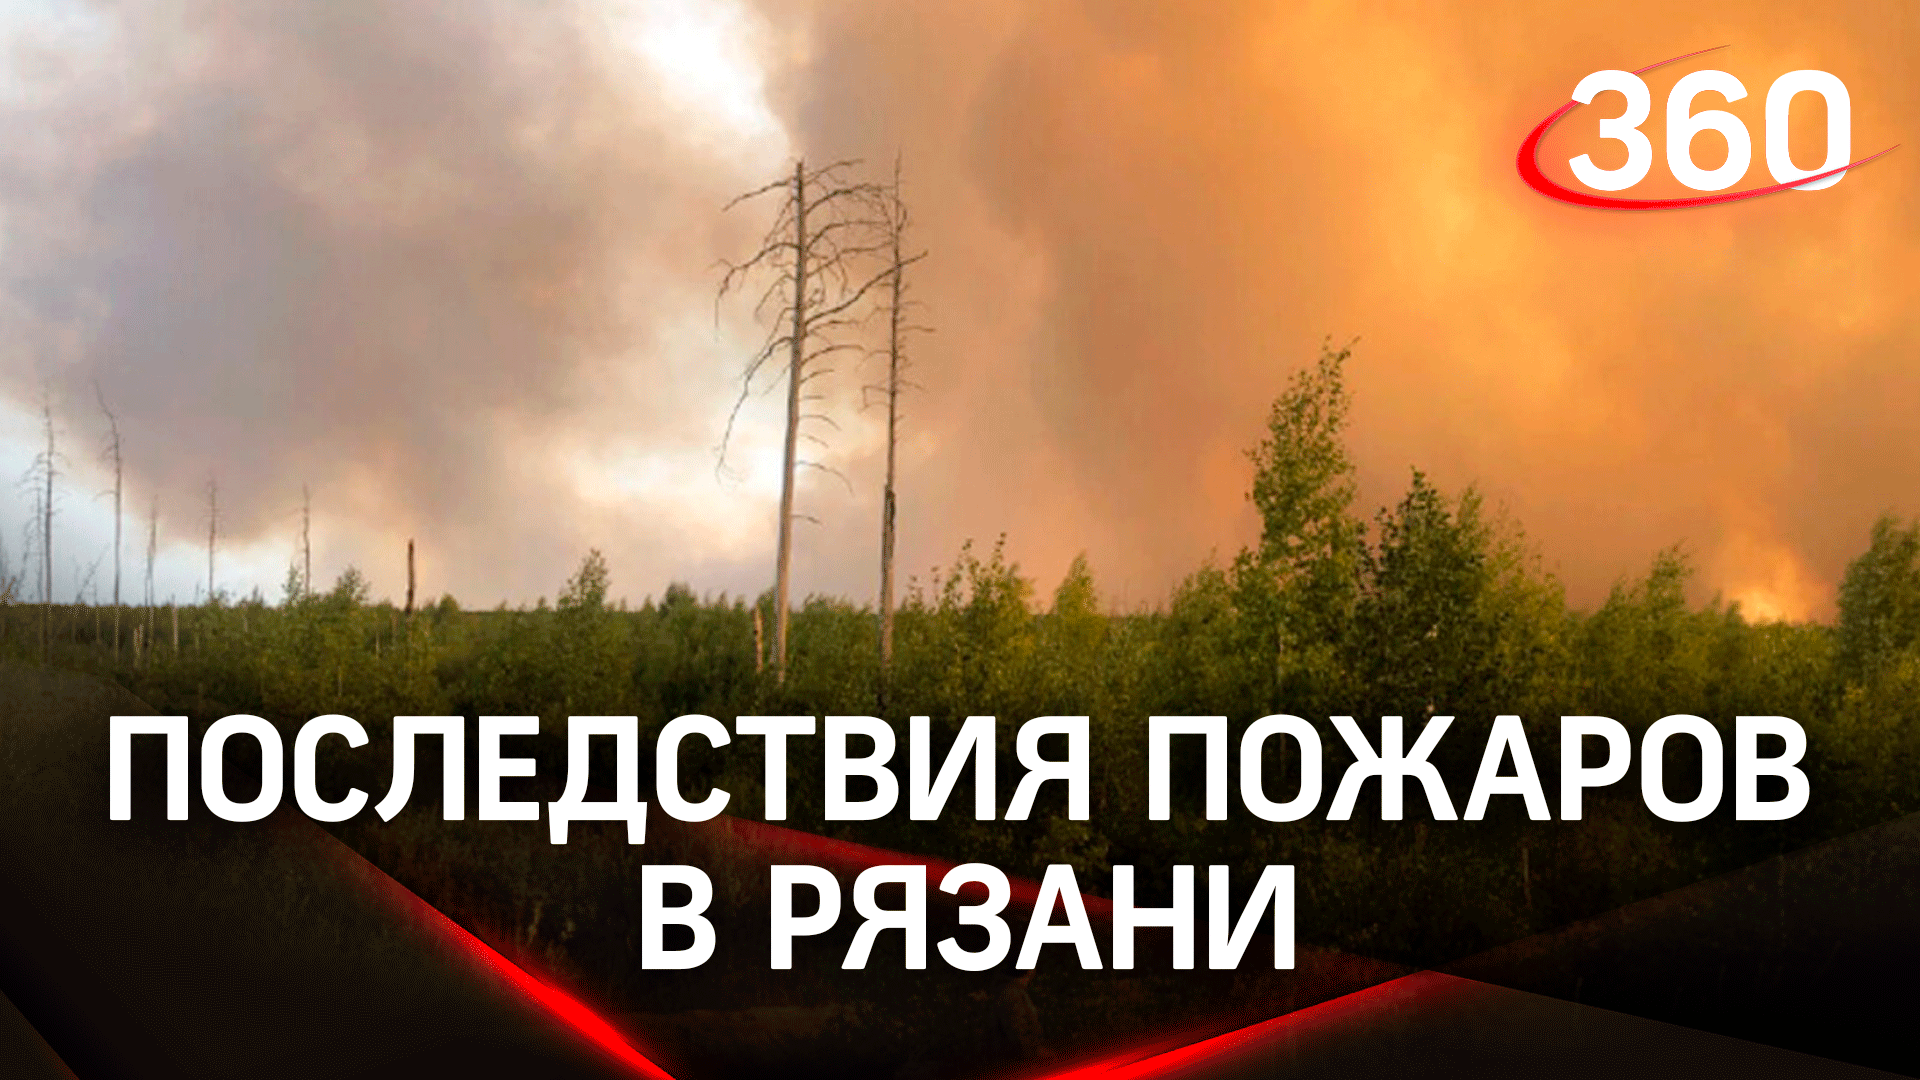 Пожары в Рязани. Меры безопасности в Подмосковье